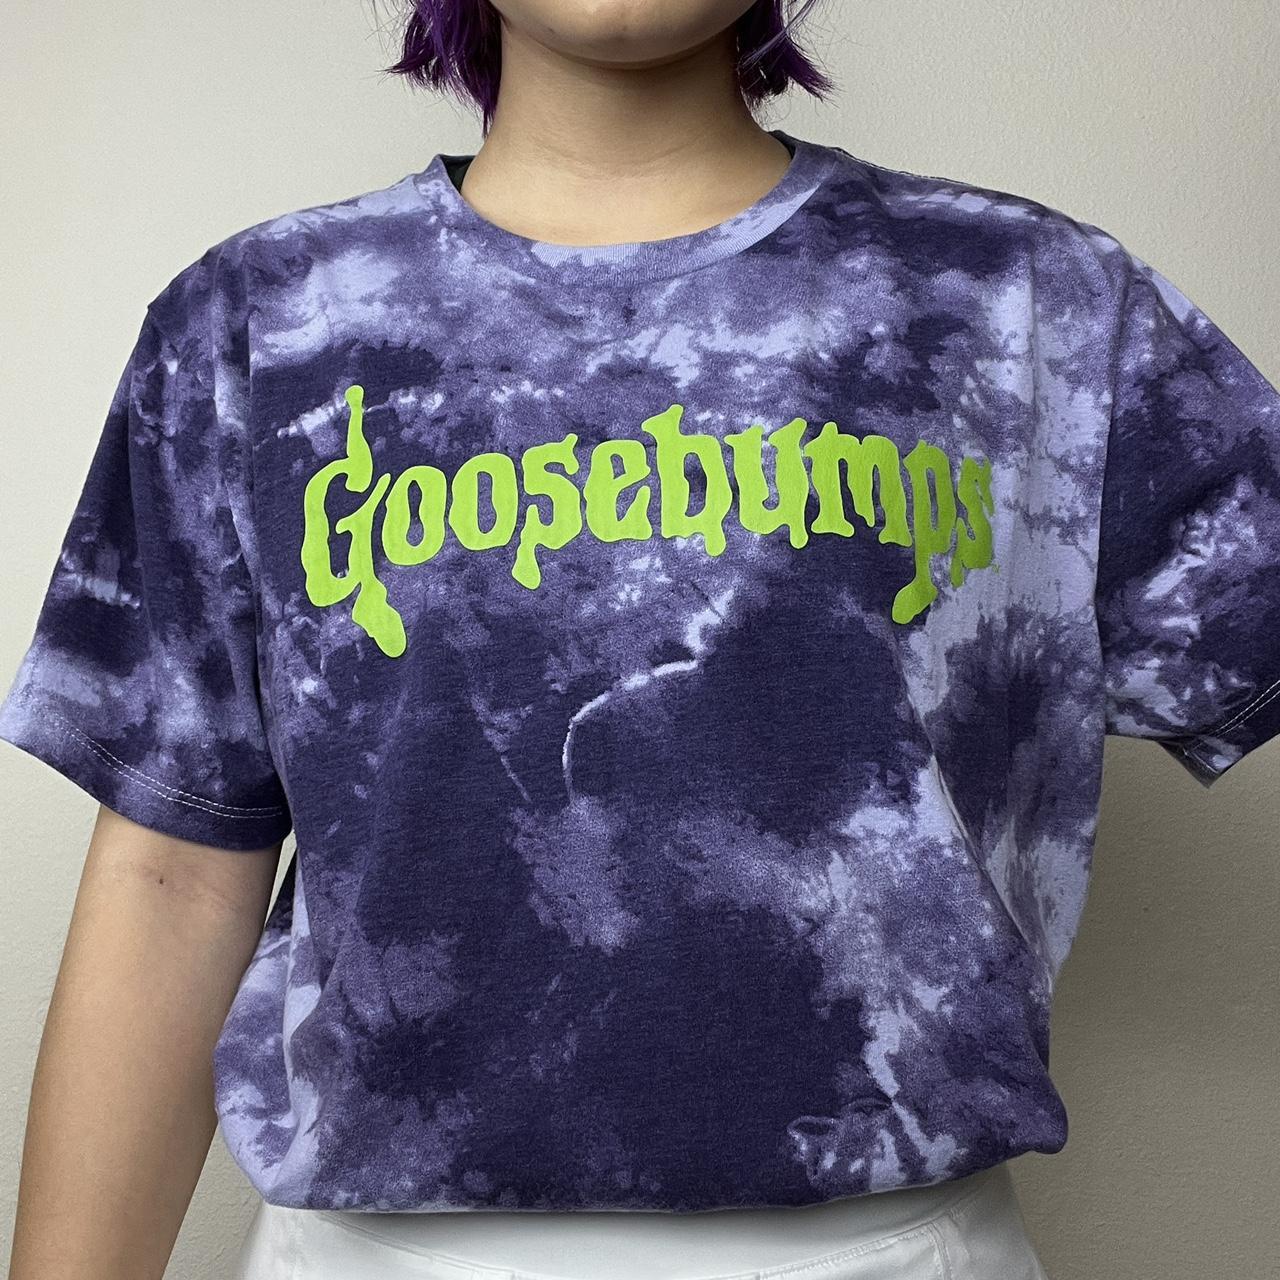 Goosebumps tie dye graphic tee in sz M! - good - Depop